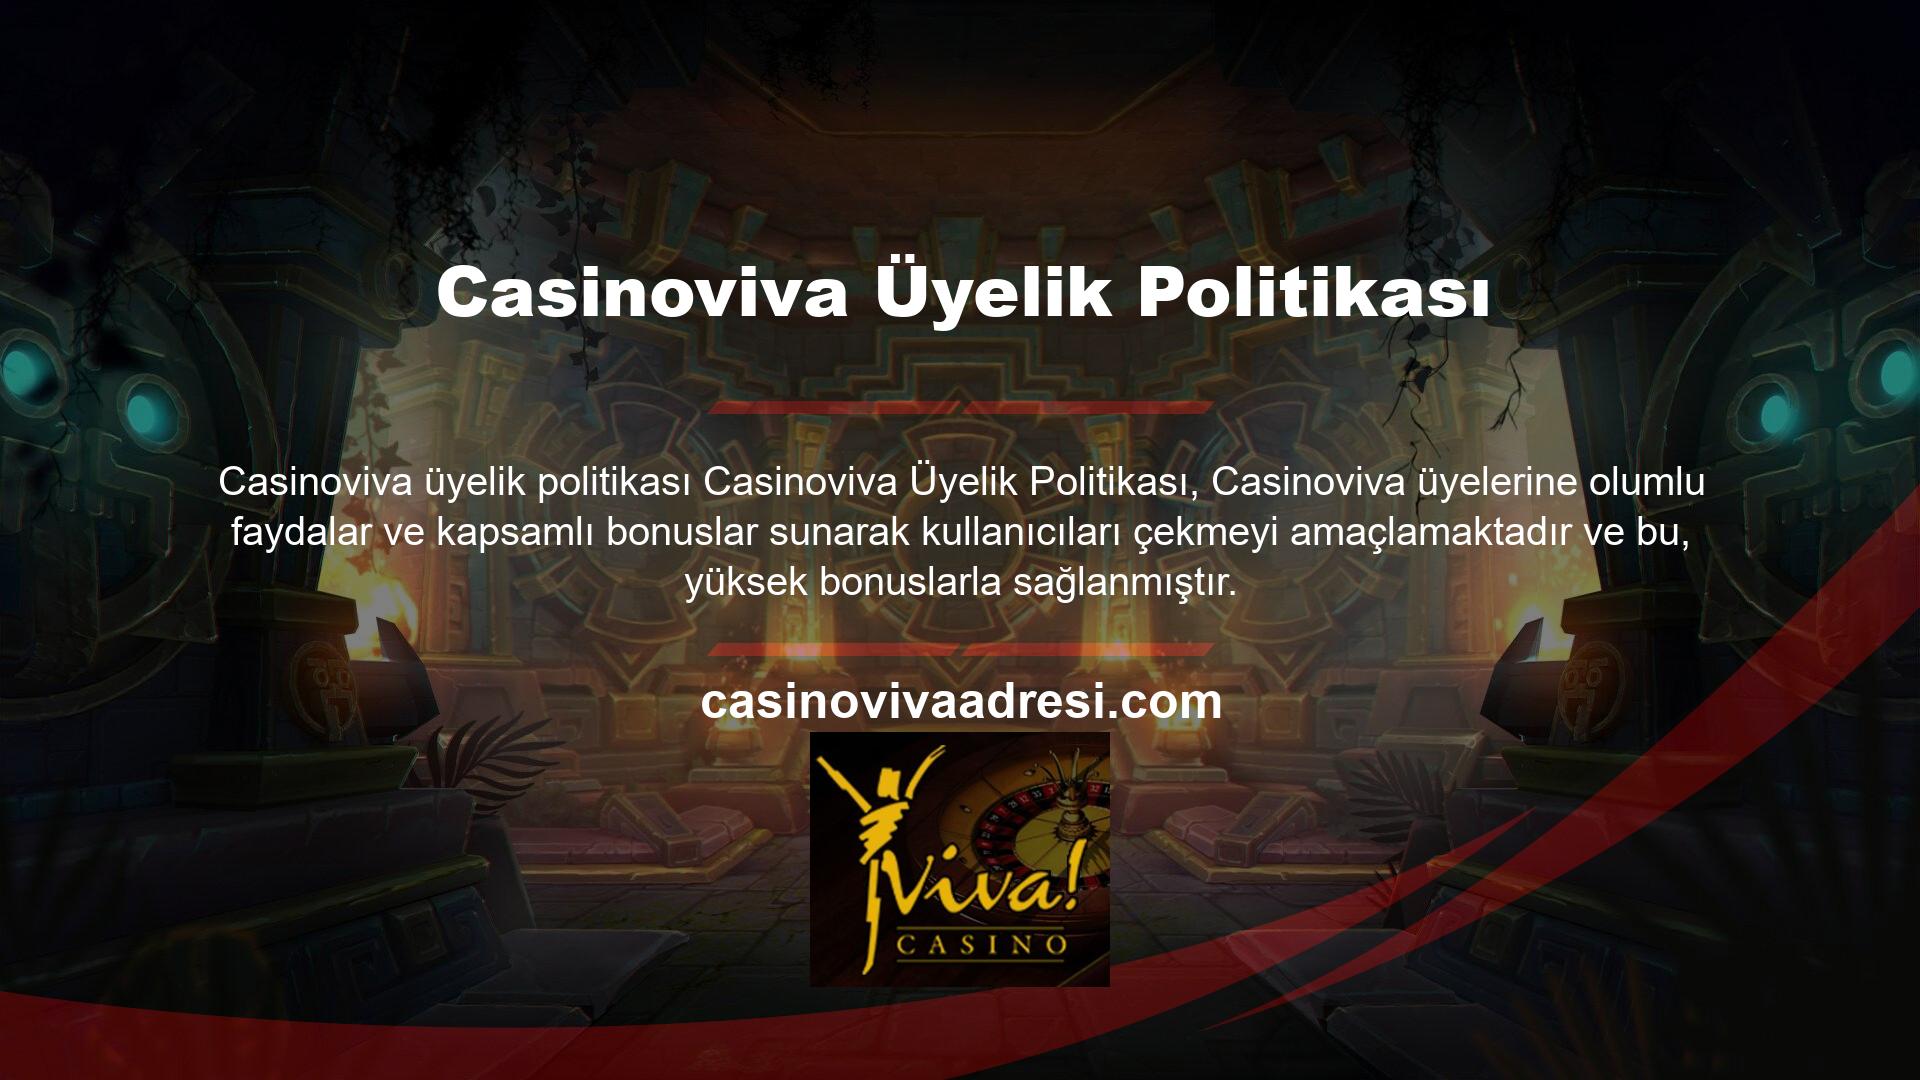 Casinoviva müşteri temsilcisi incelemeleri Casinoviva bahis sitesi forumlarında yer alan incelemeler, müşteri temsilcileri tarafından sağlanan mükemmel hizmeti vurgulamaktadır